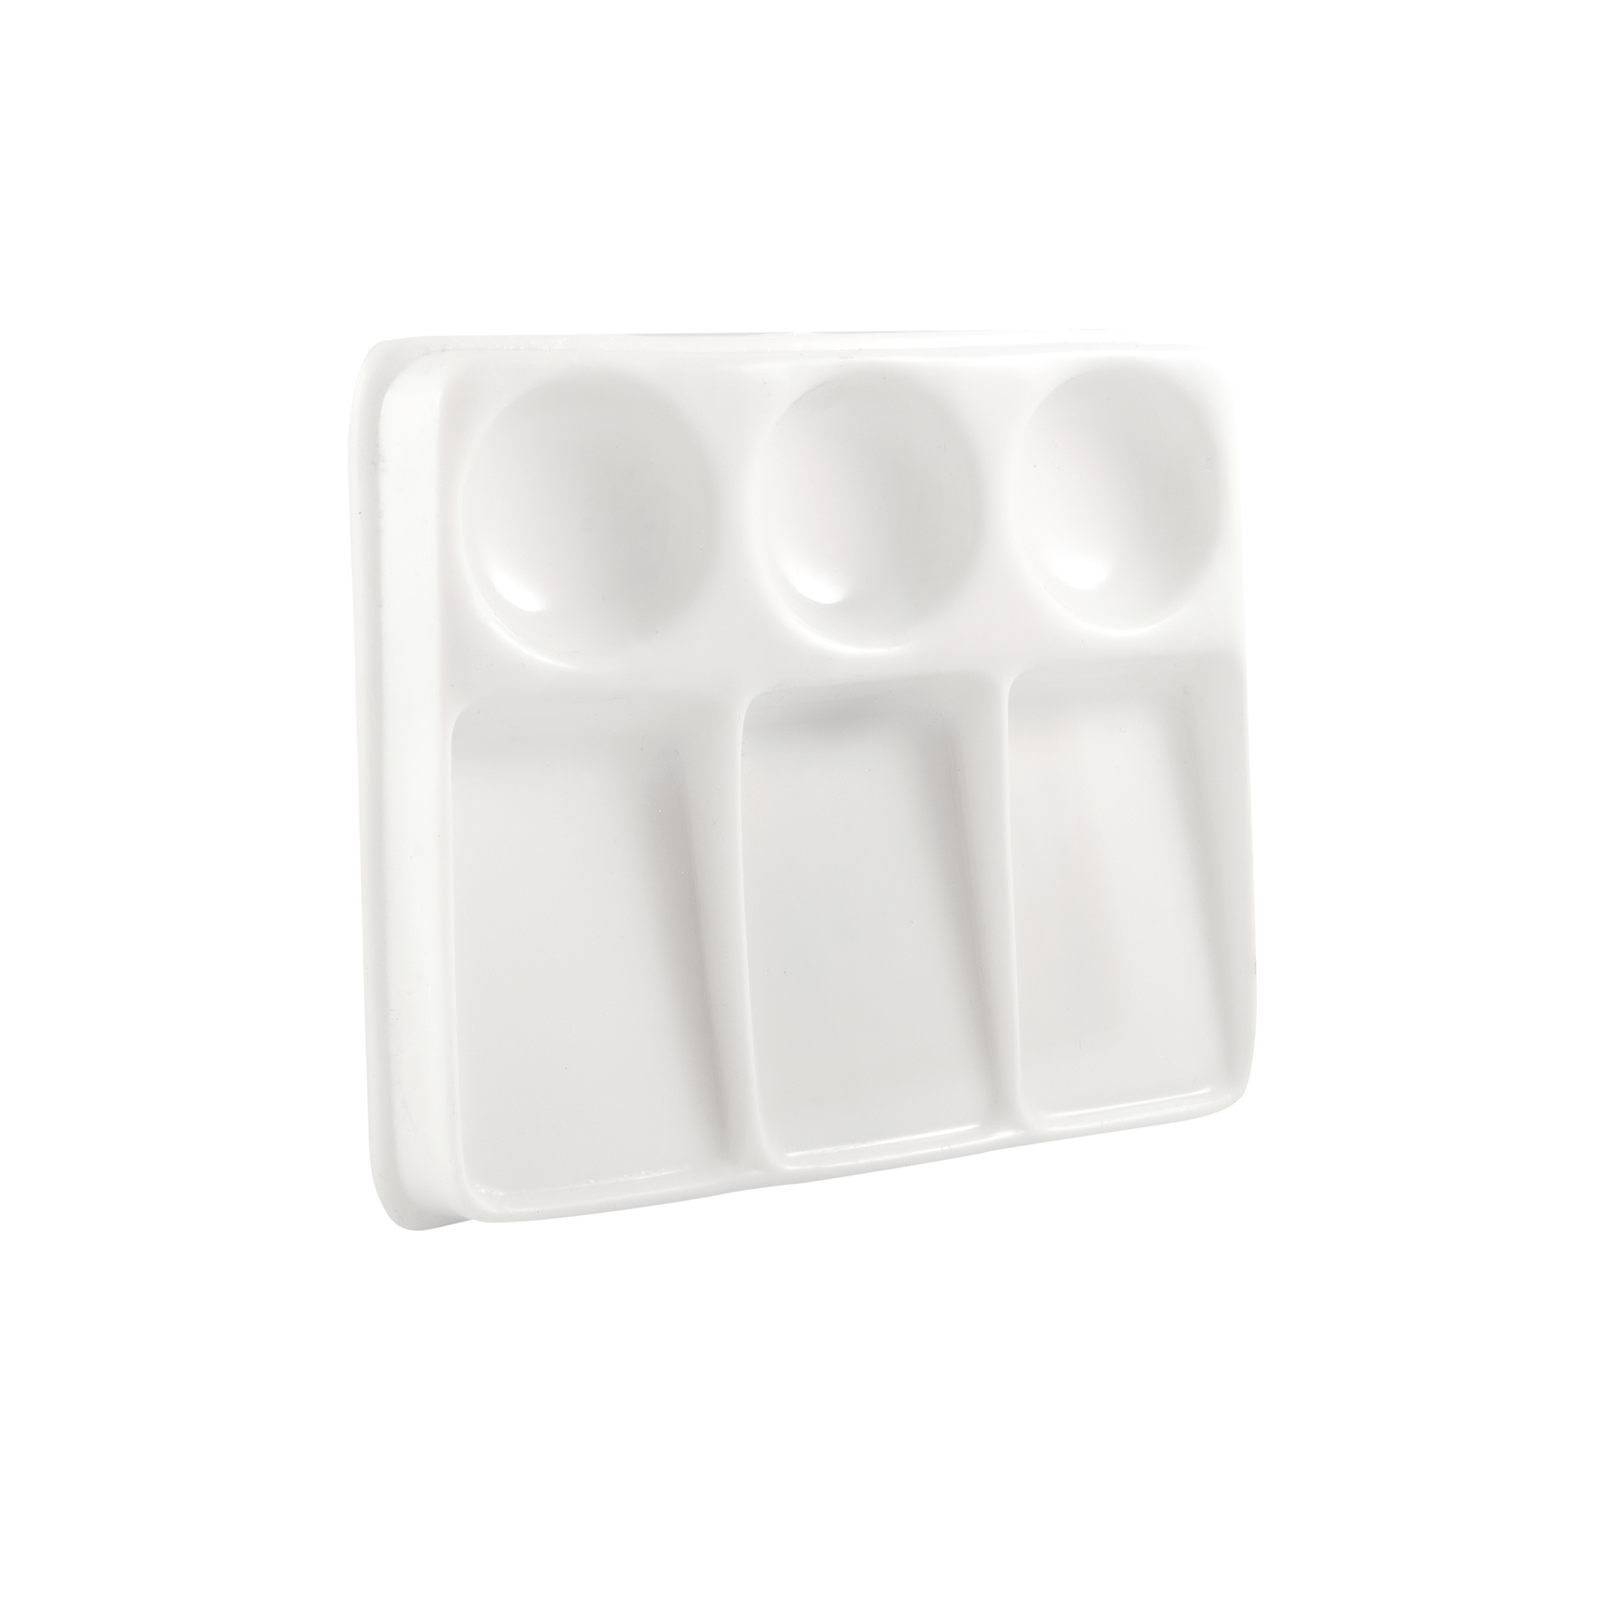 ATL - Godete de plástico rectangular con 6 cavidades